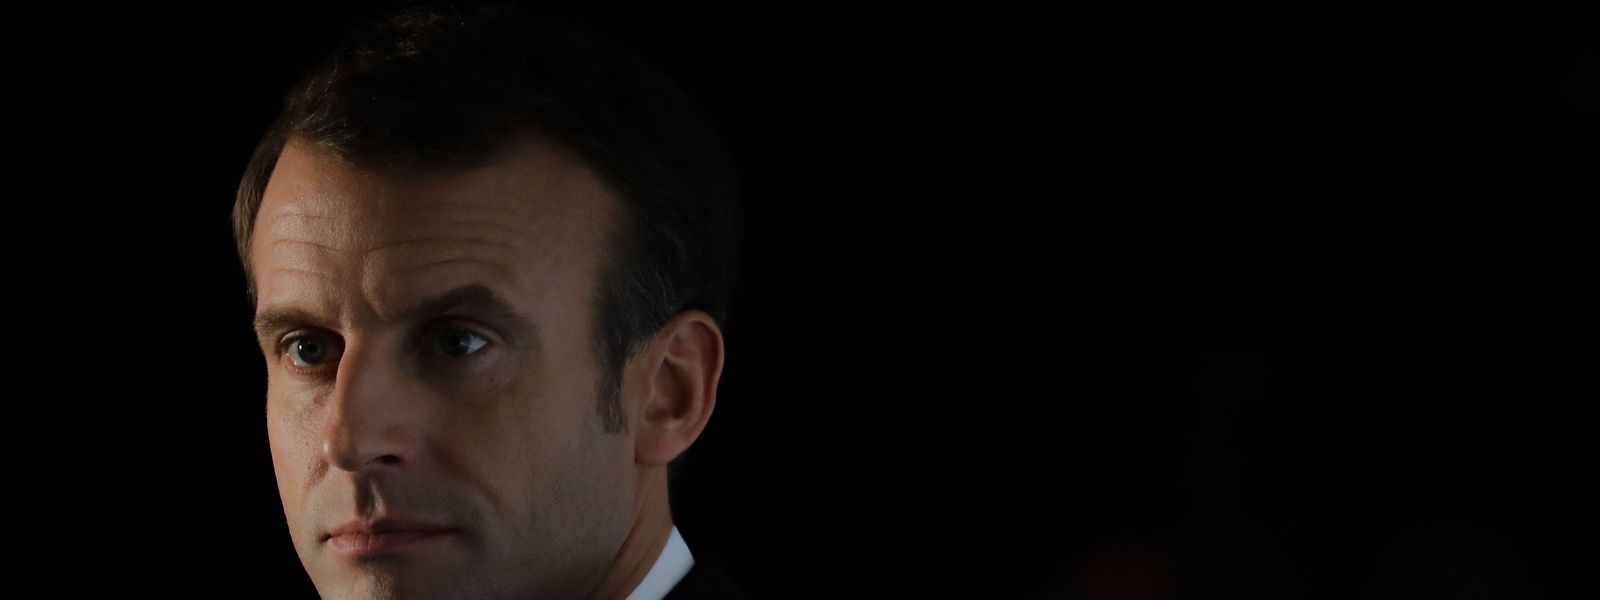 Emmanuel Macron steckt weitgehend hinter dem Reformvorschlag der EU-Kommission